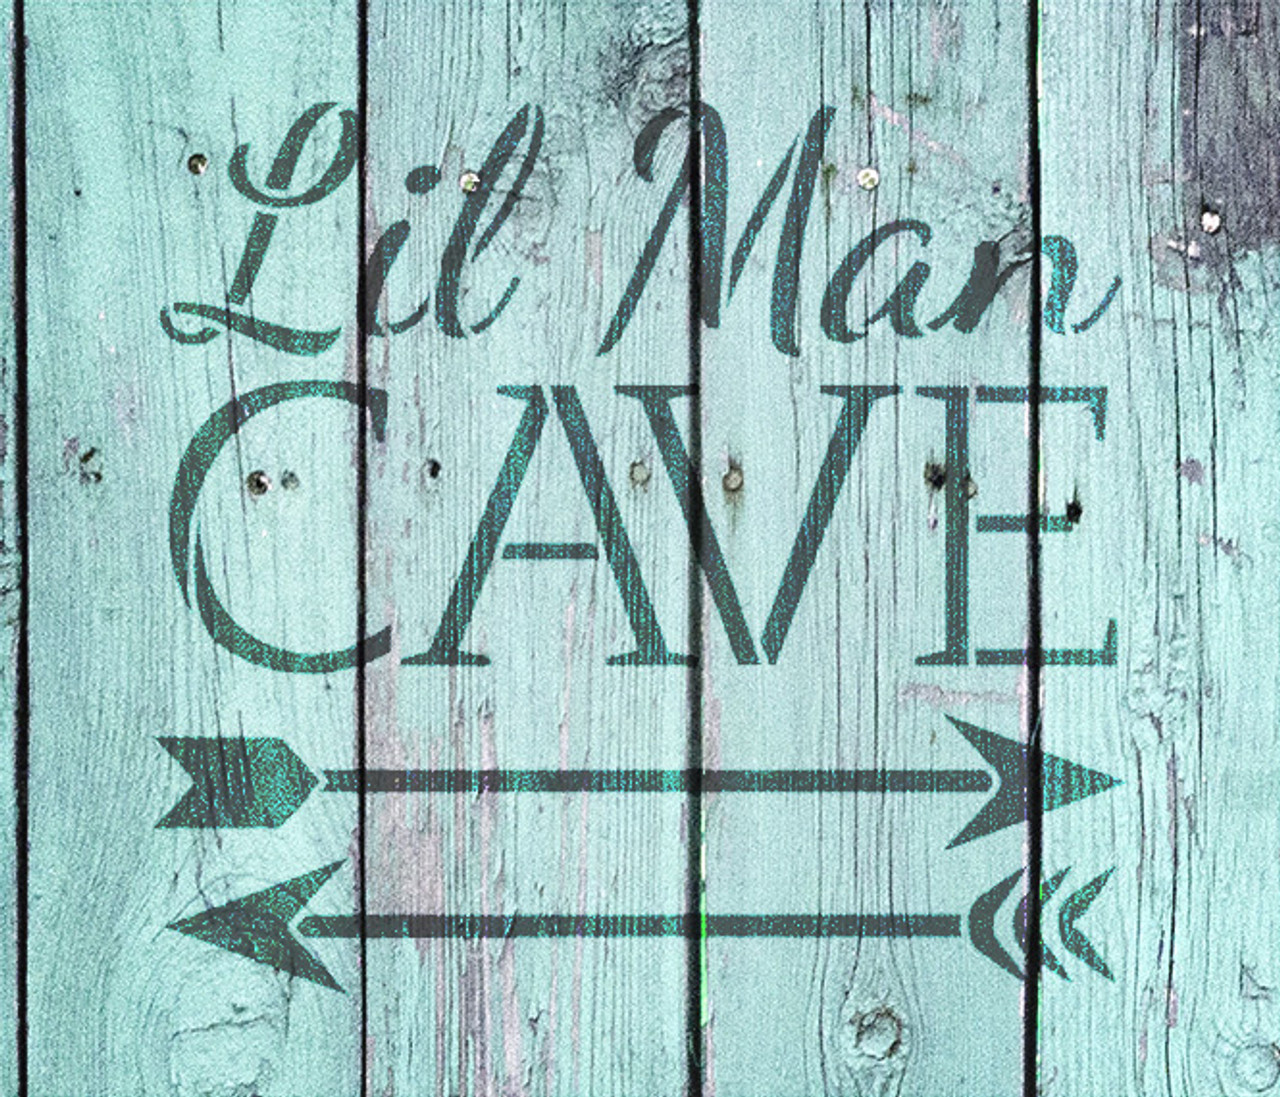 Lil Man Cave - Arrows - Word Art Stencil - 19" x 18" - STCL1838_5 - by StudioR12